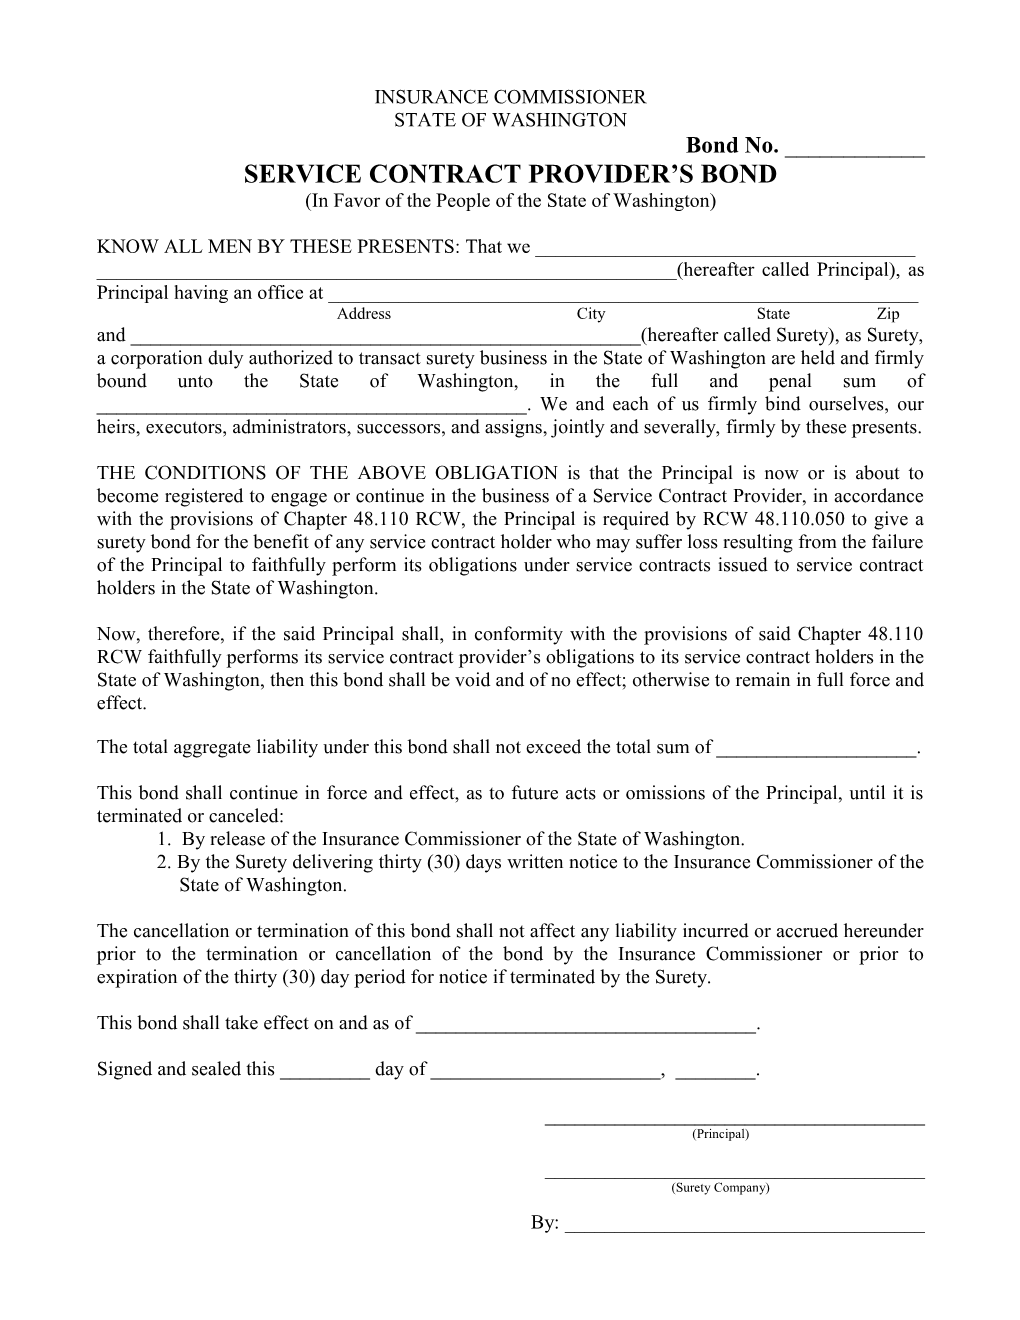 WA State Service Contract Provider S Bond Form